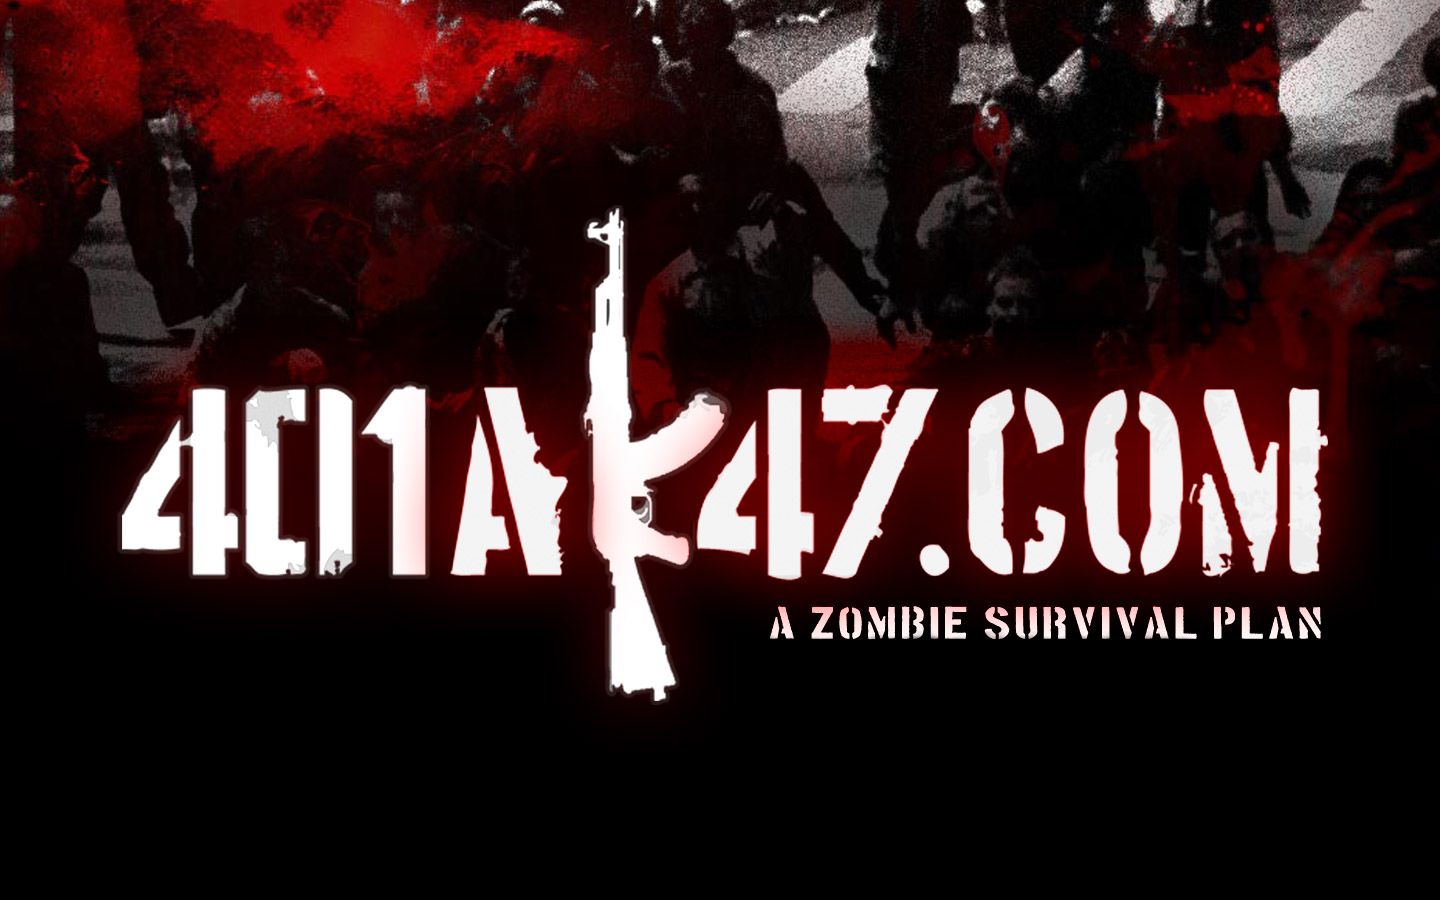 Zombie Desktop Wallpaper | 401AK47 | A Zombie Survival Plan - Part 3